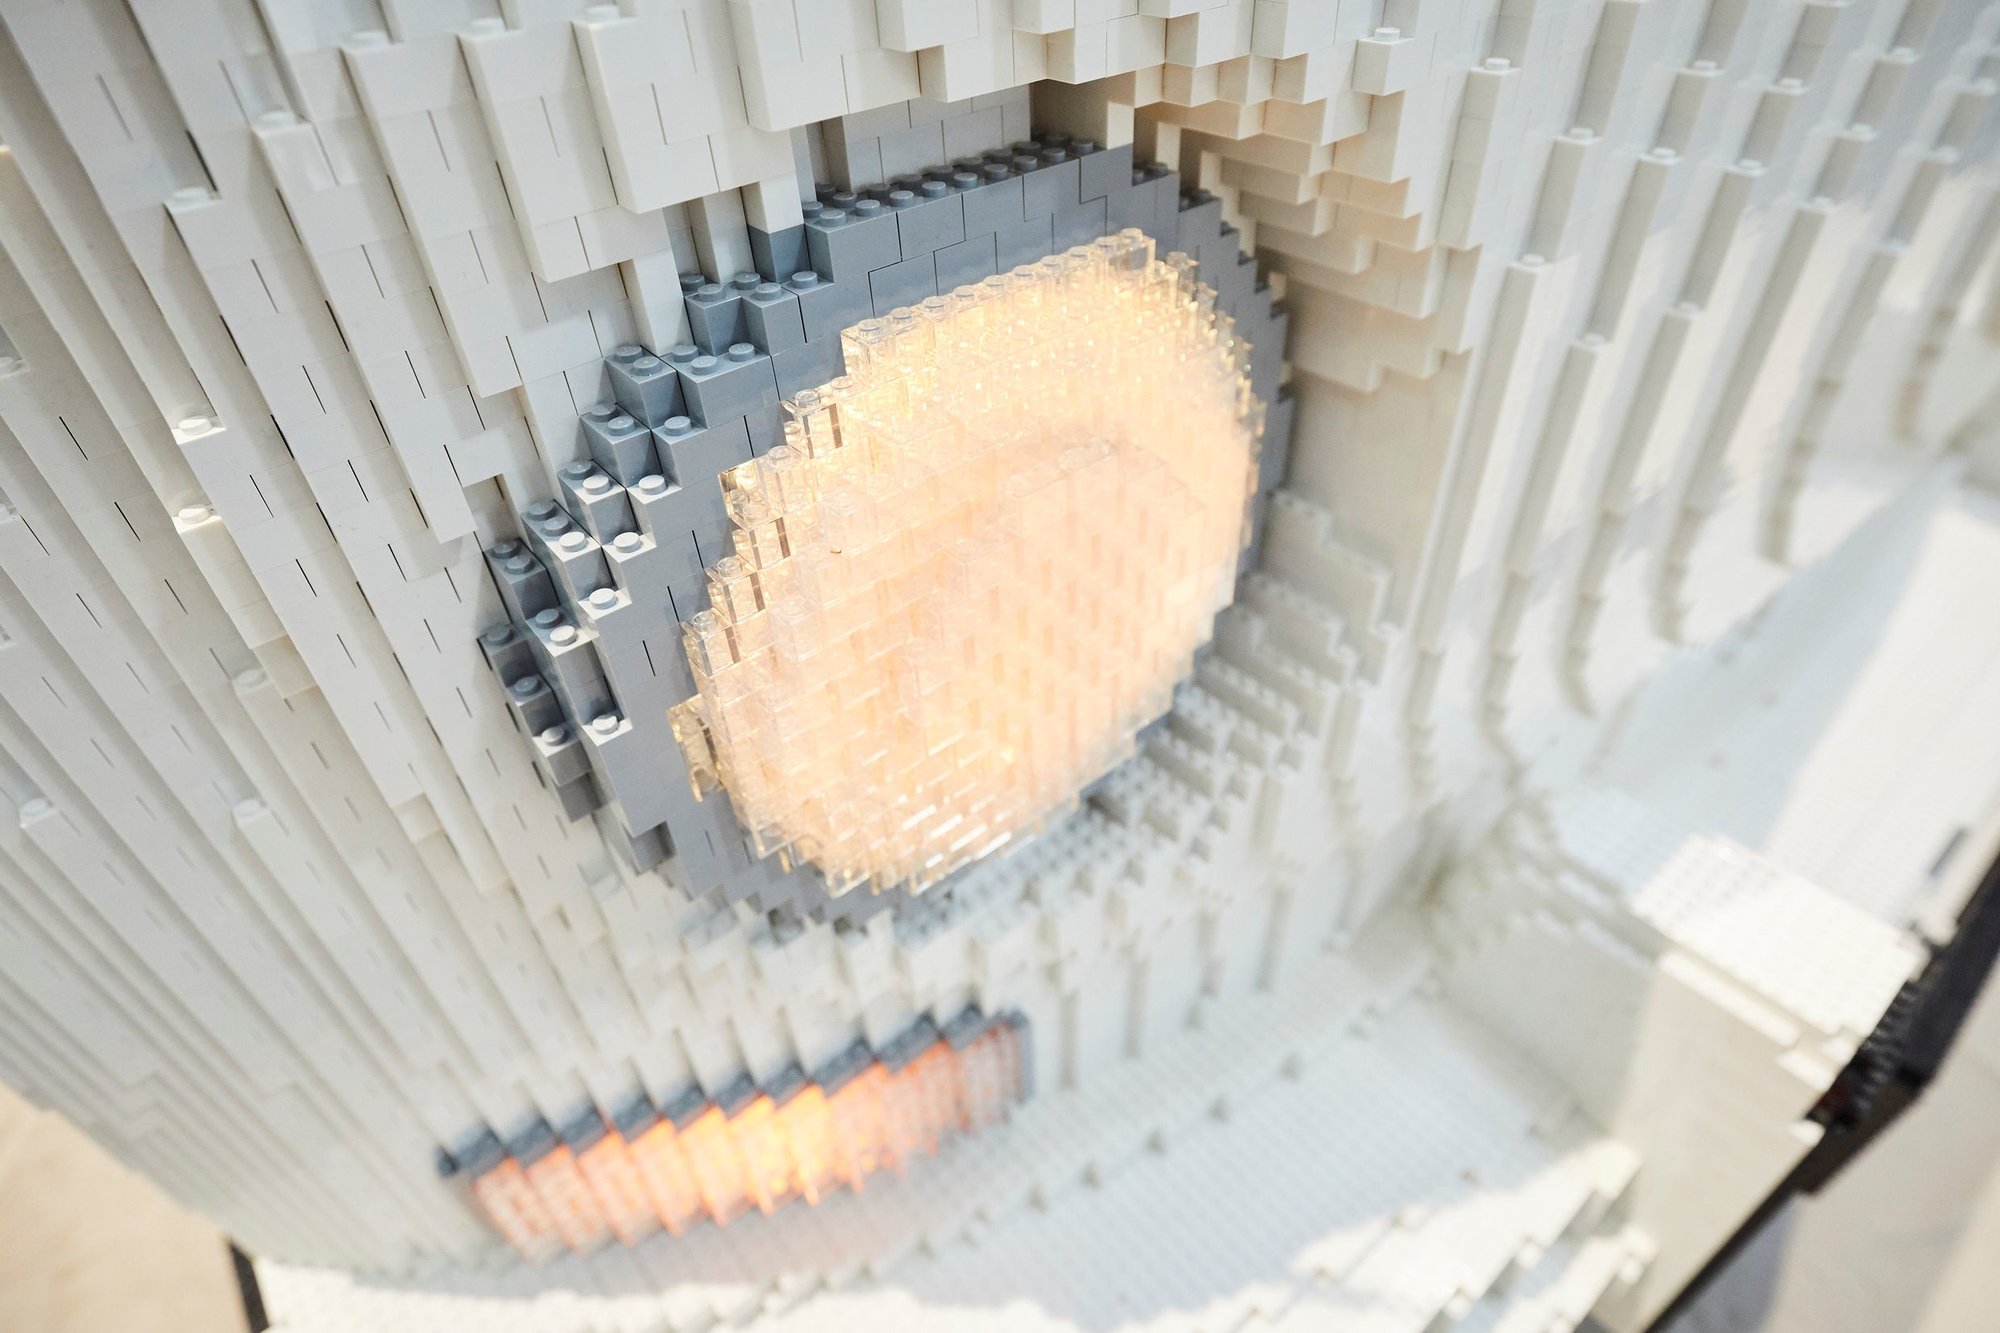 Premiéra na veletrhu f.re.e v Mnichově: T2 sestavený ze 400 000 kostek LEGO